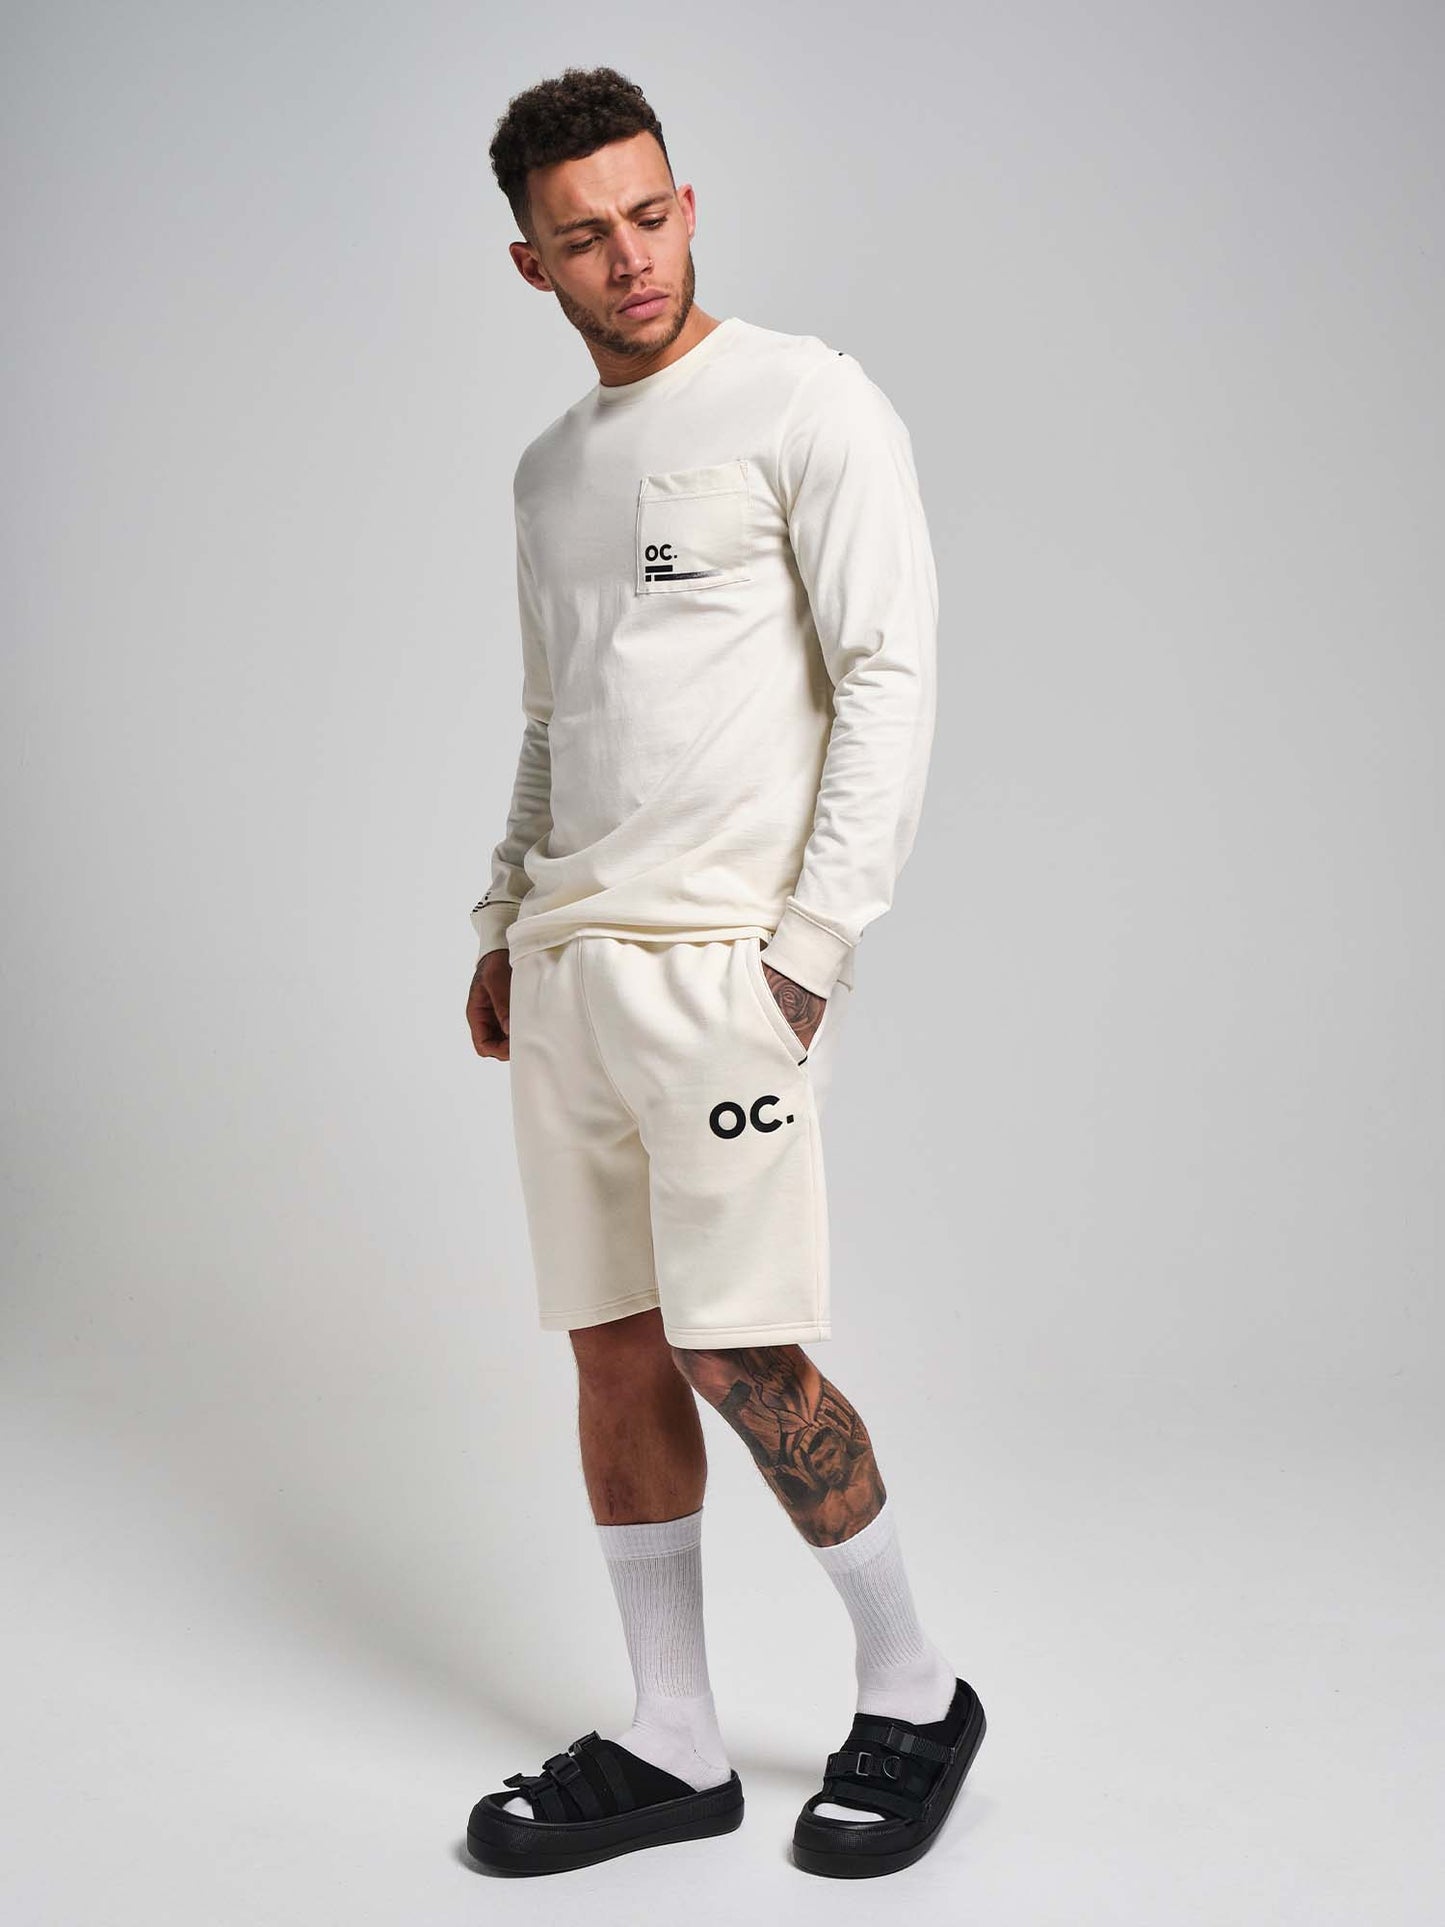 OC. Long Sleeve T-Shirt - Off White